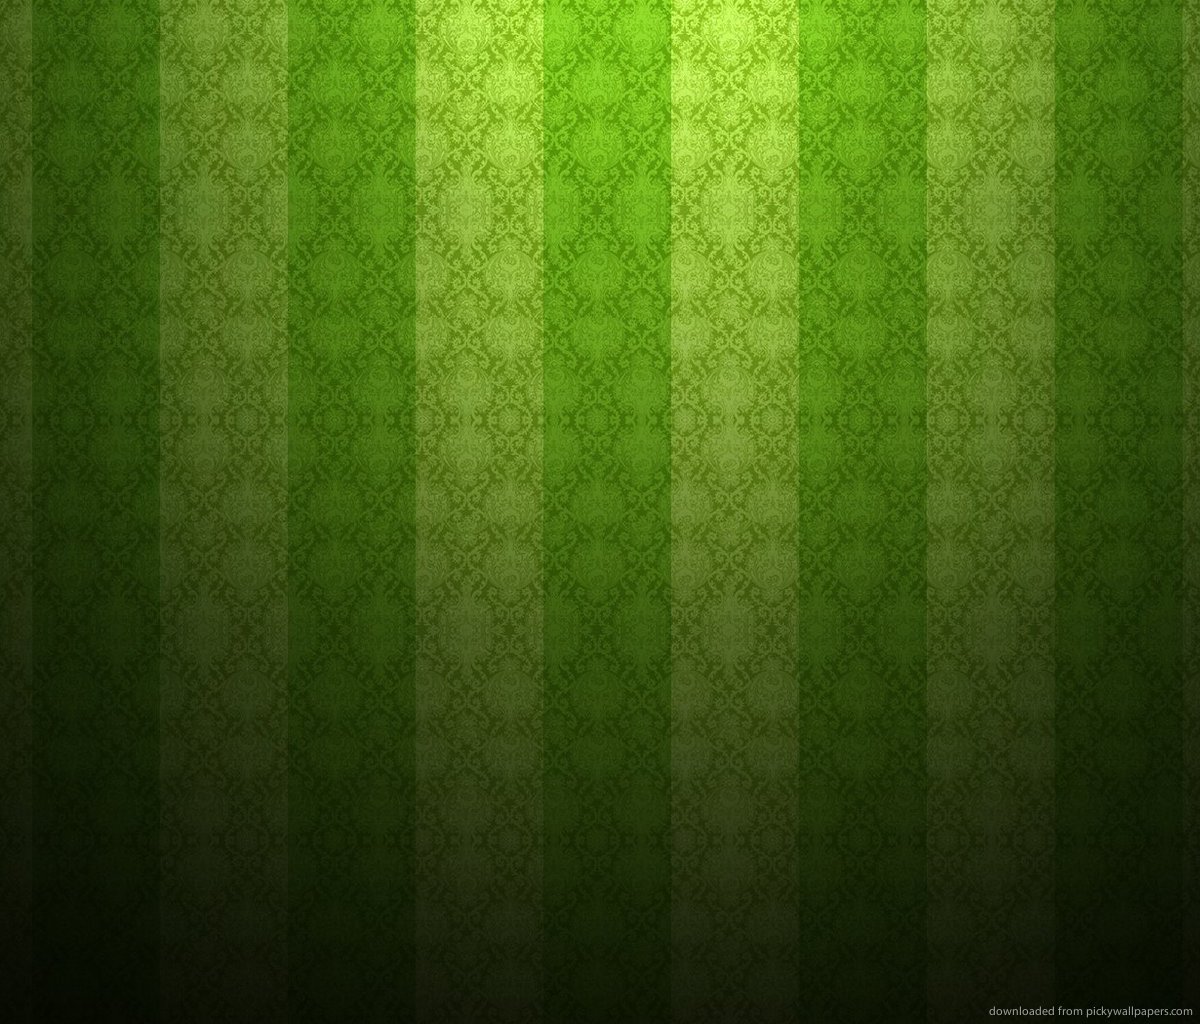 Green textured wallpaper with vertical stripes FSSP HUNTERDON